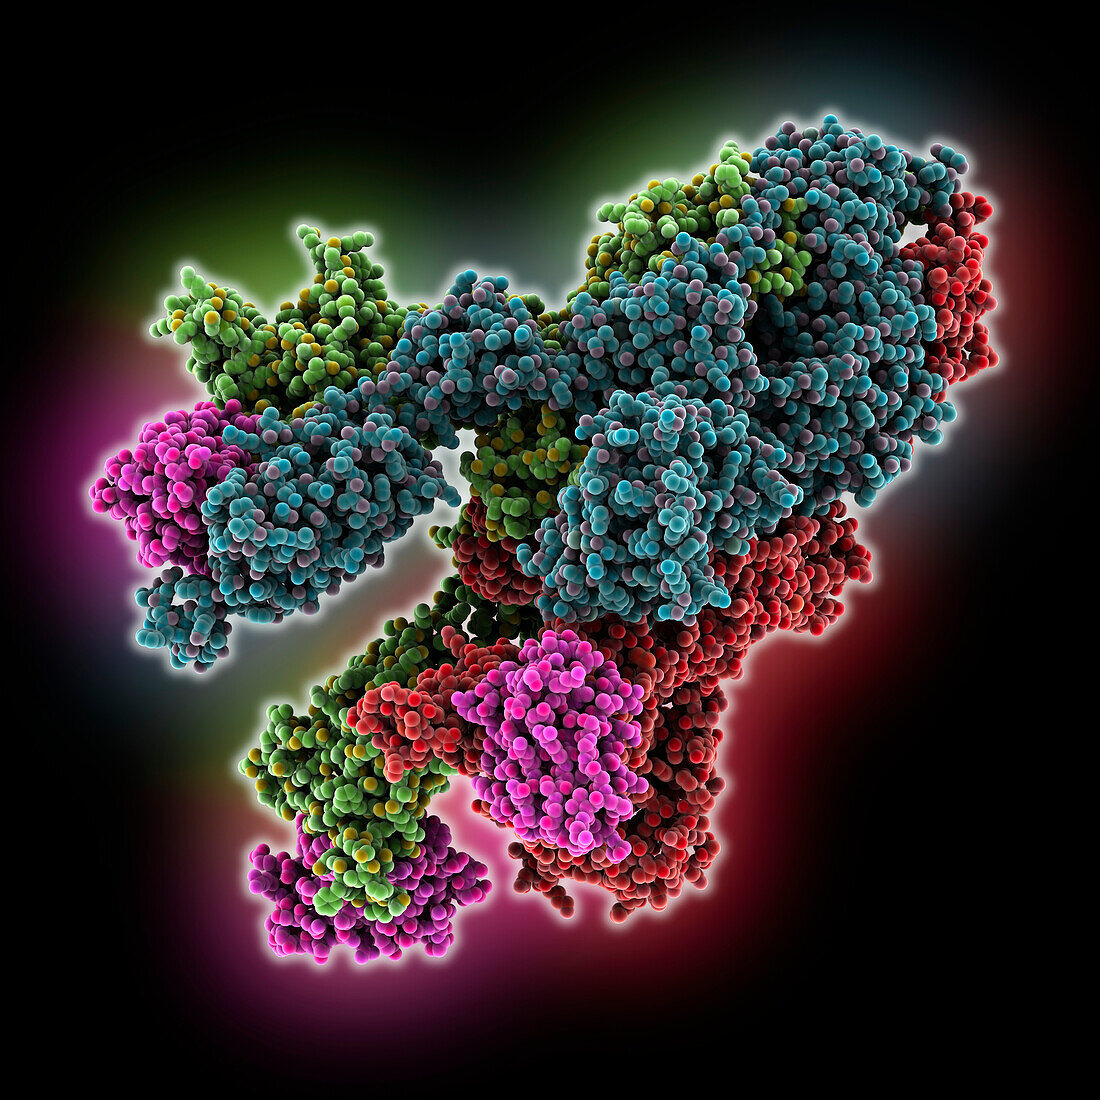 SARS-CoV-2 spike glycoprotein complex, molecular model